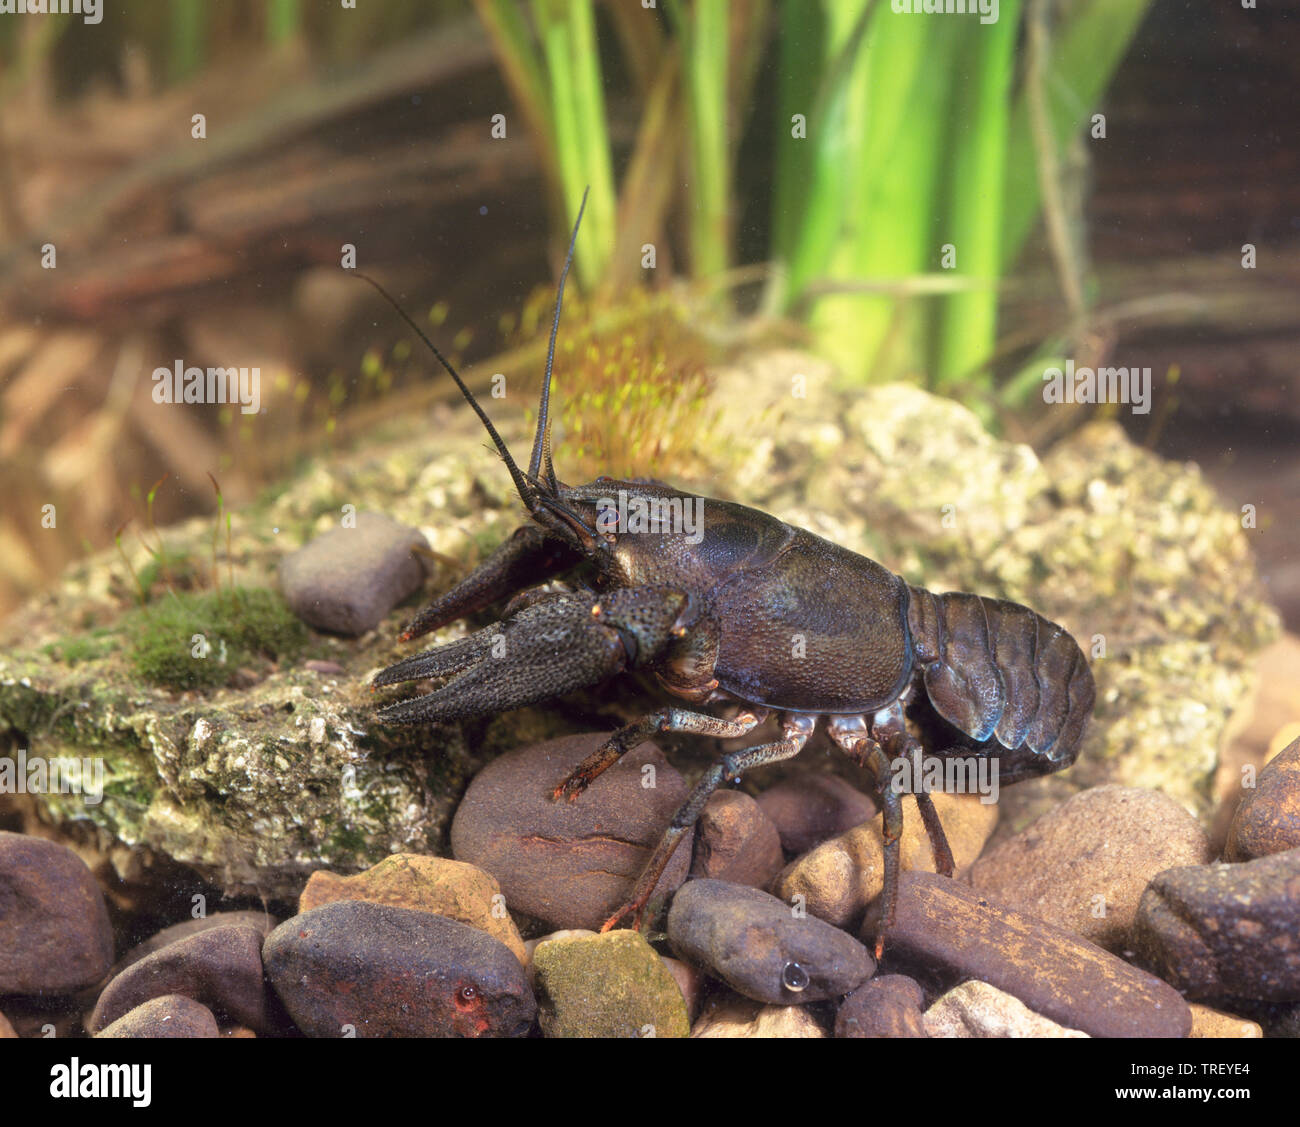 Noble Crayfish (Astacus astacus). Adult on rocks. Germany. Stock Photo